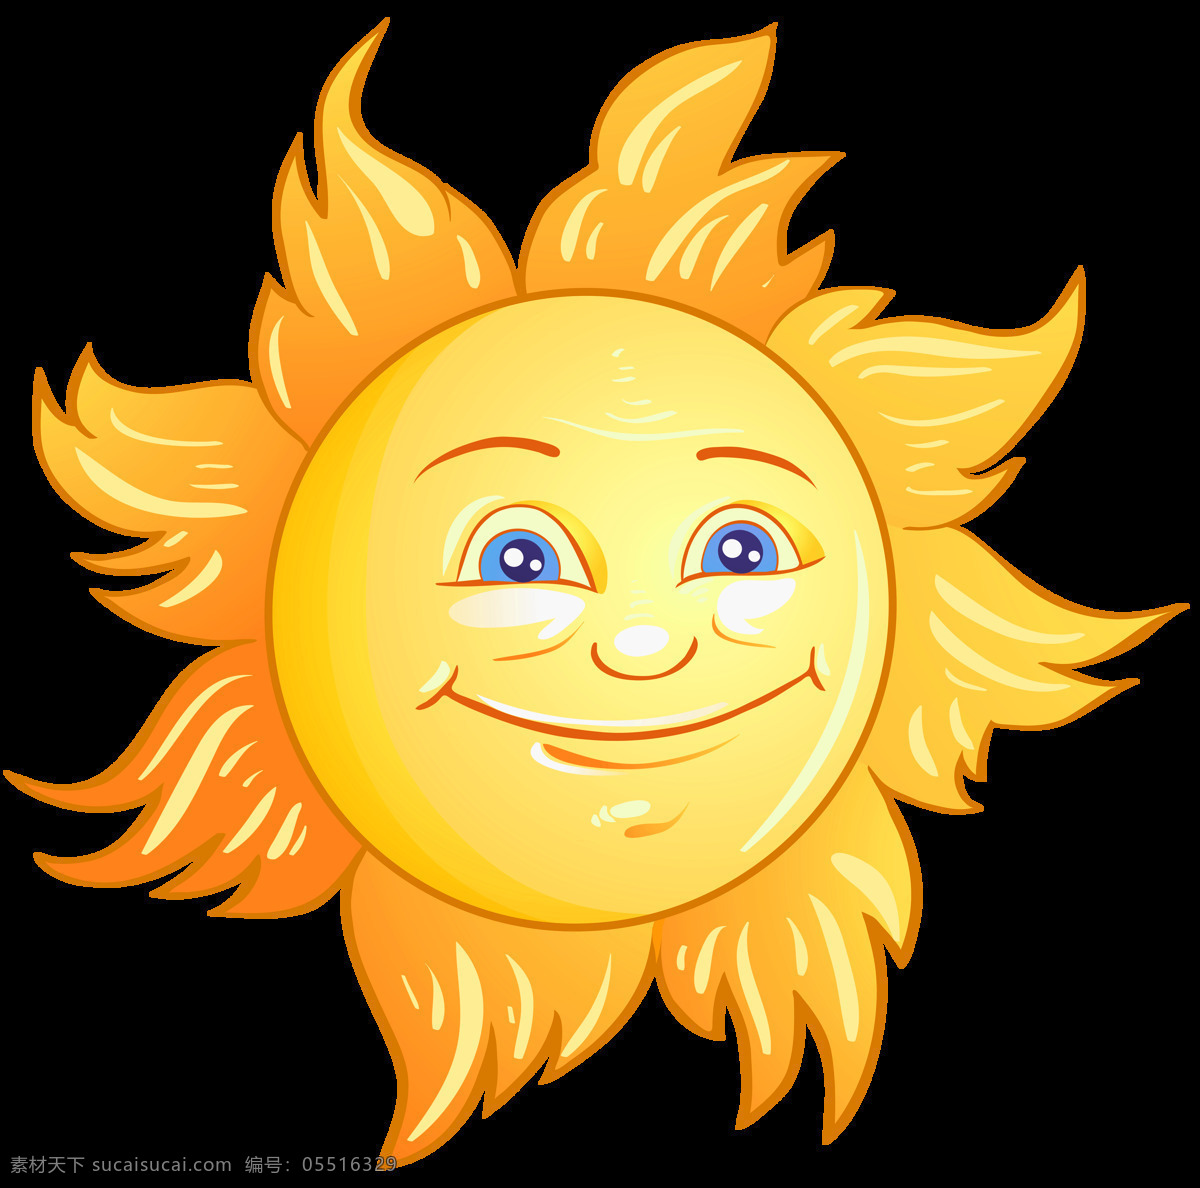 卡通 微笑 太阳 免 抠 透明 太阳真实图片 太阳表情包 太阳升起图片 太阳图片素材 太阳公公图片 卡通阳光图片 黄色太阳 日头 日光图片 手绘太阳